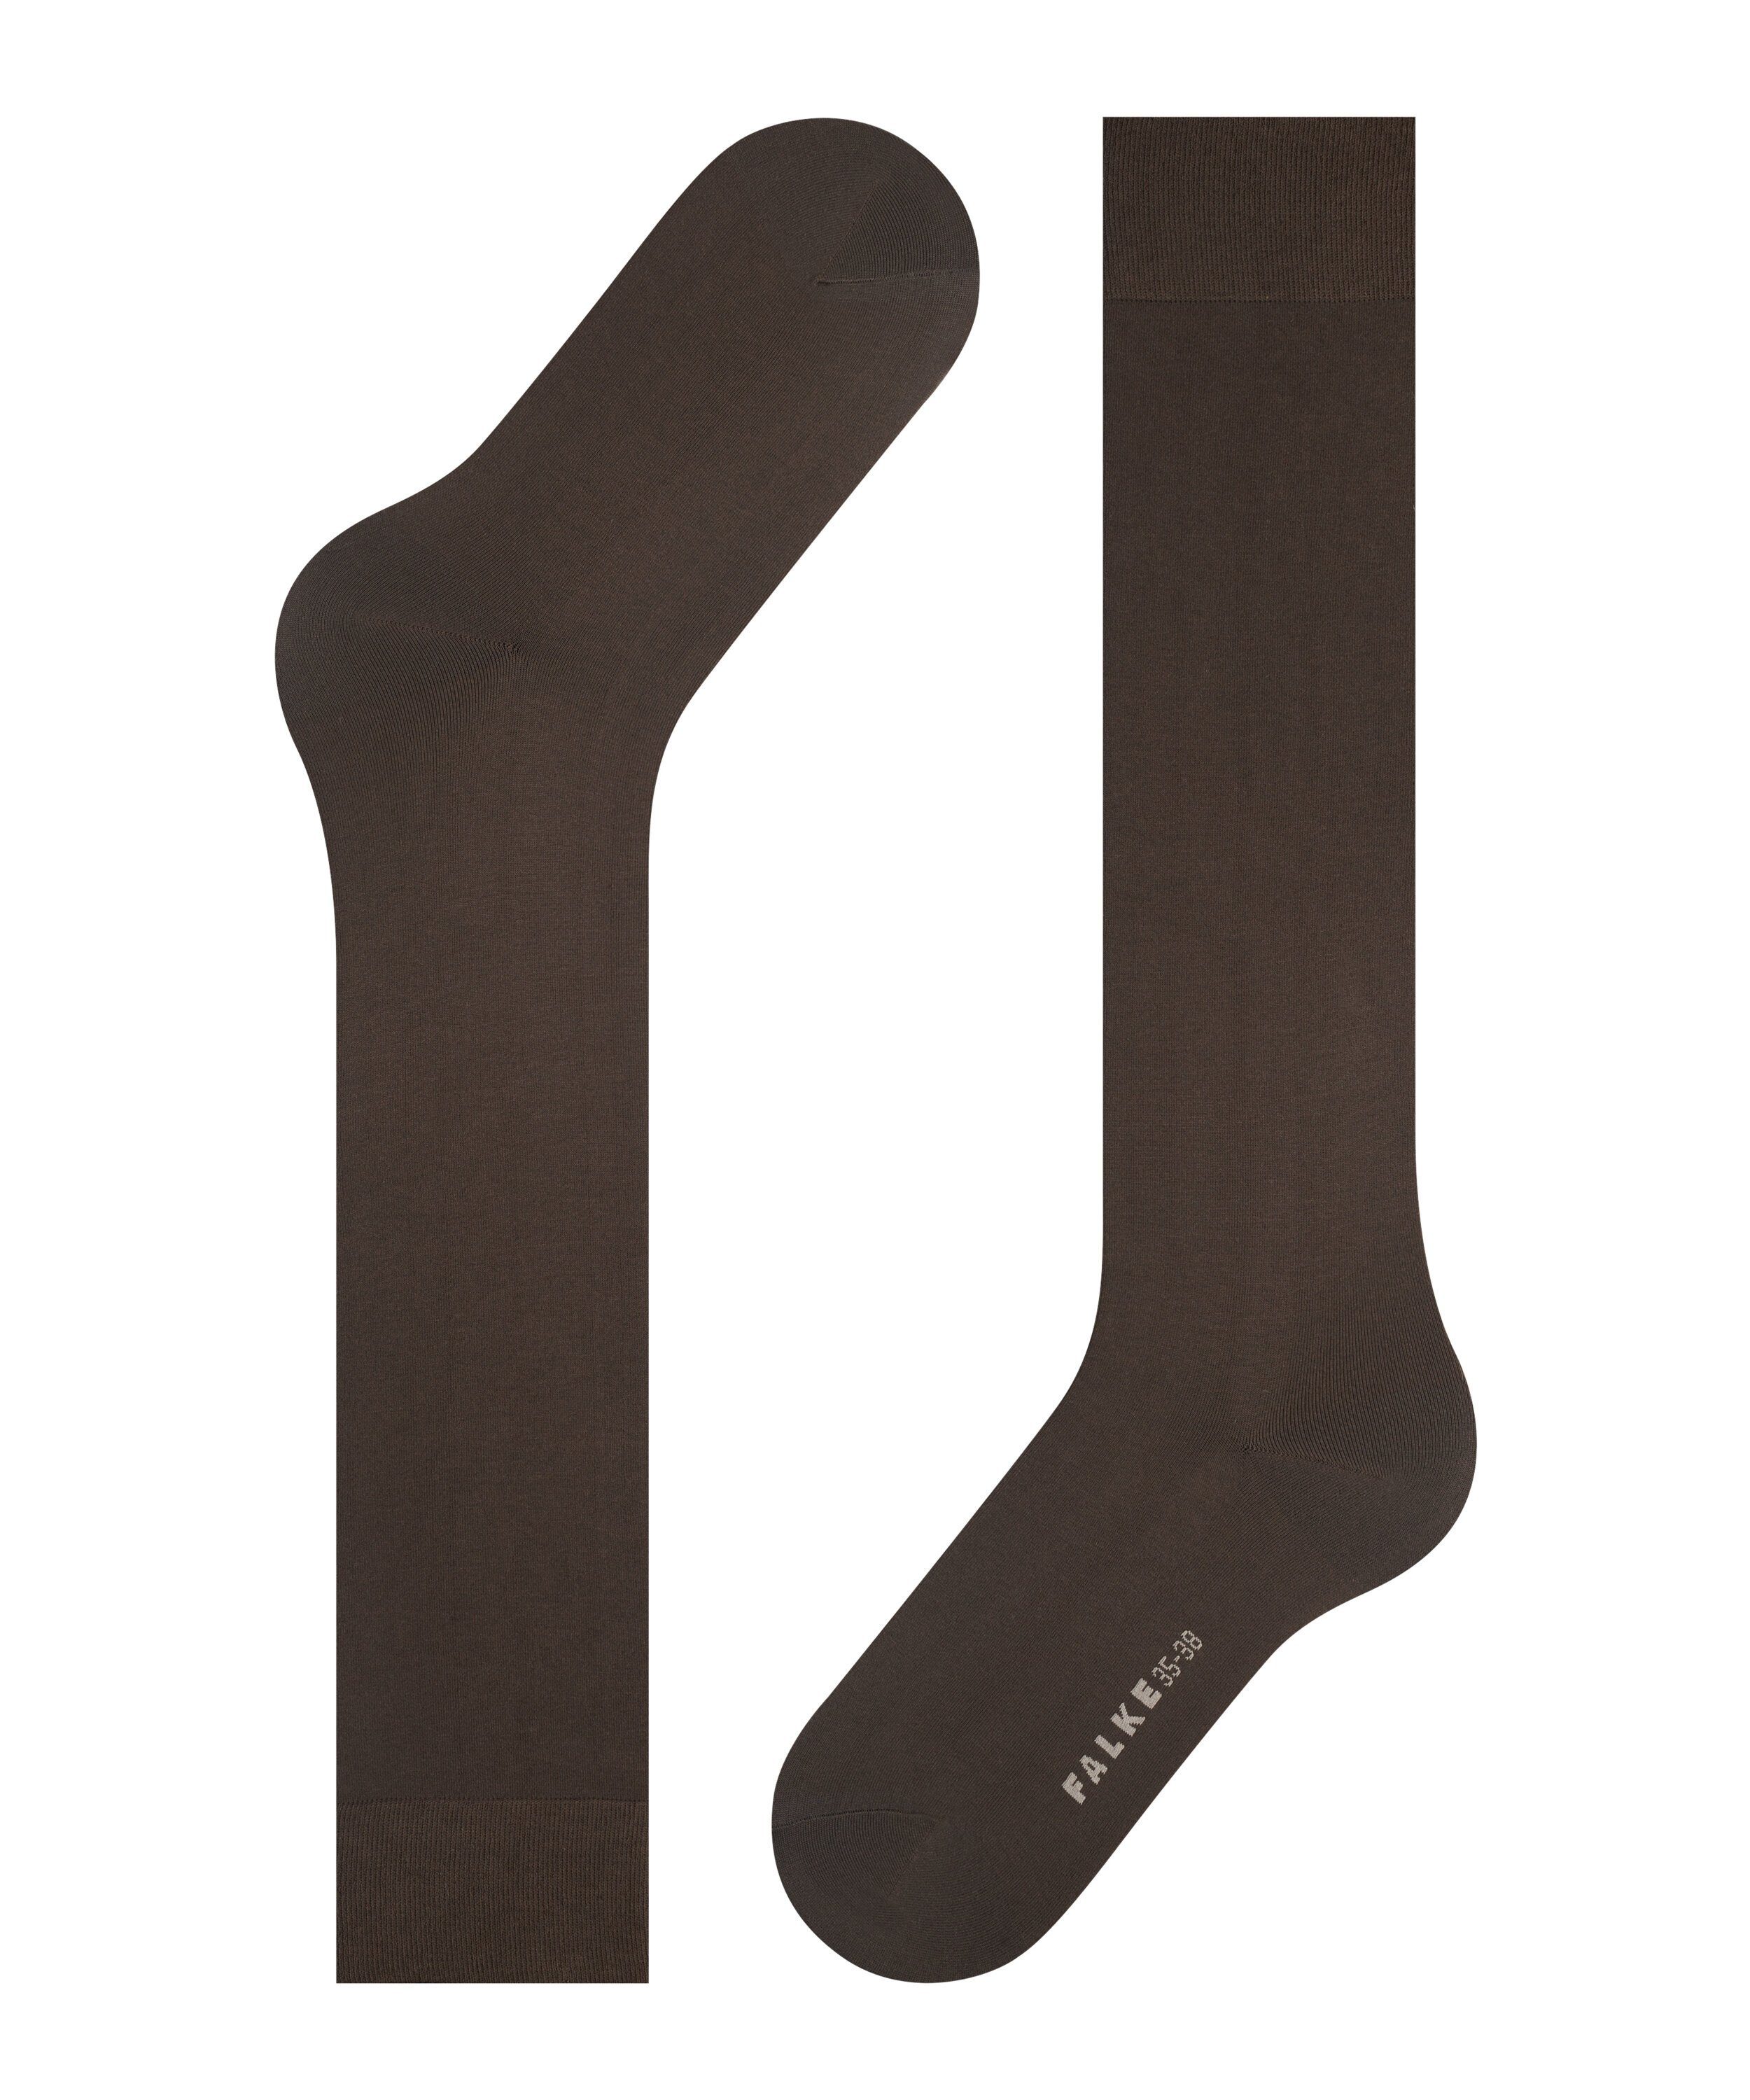 Maschenbild mit Cotton FALKE (5239) dark brown (1-Paar) Kniestrümpfe feinem sehr Touch